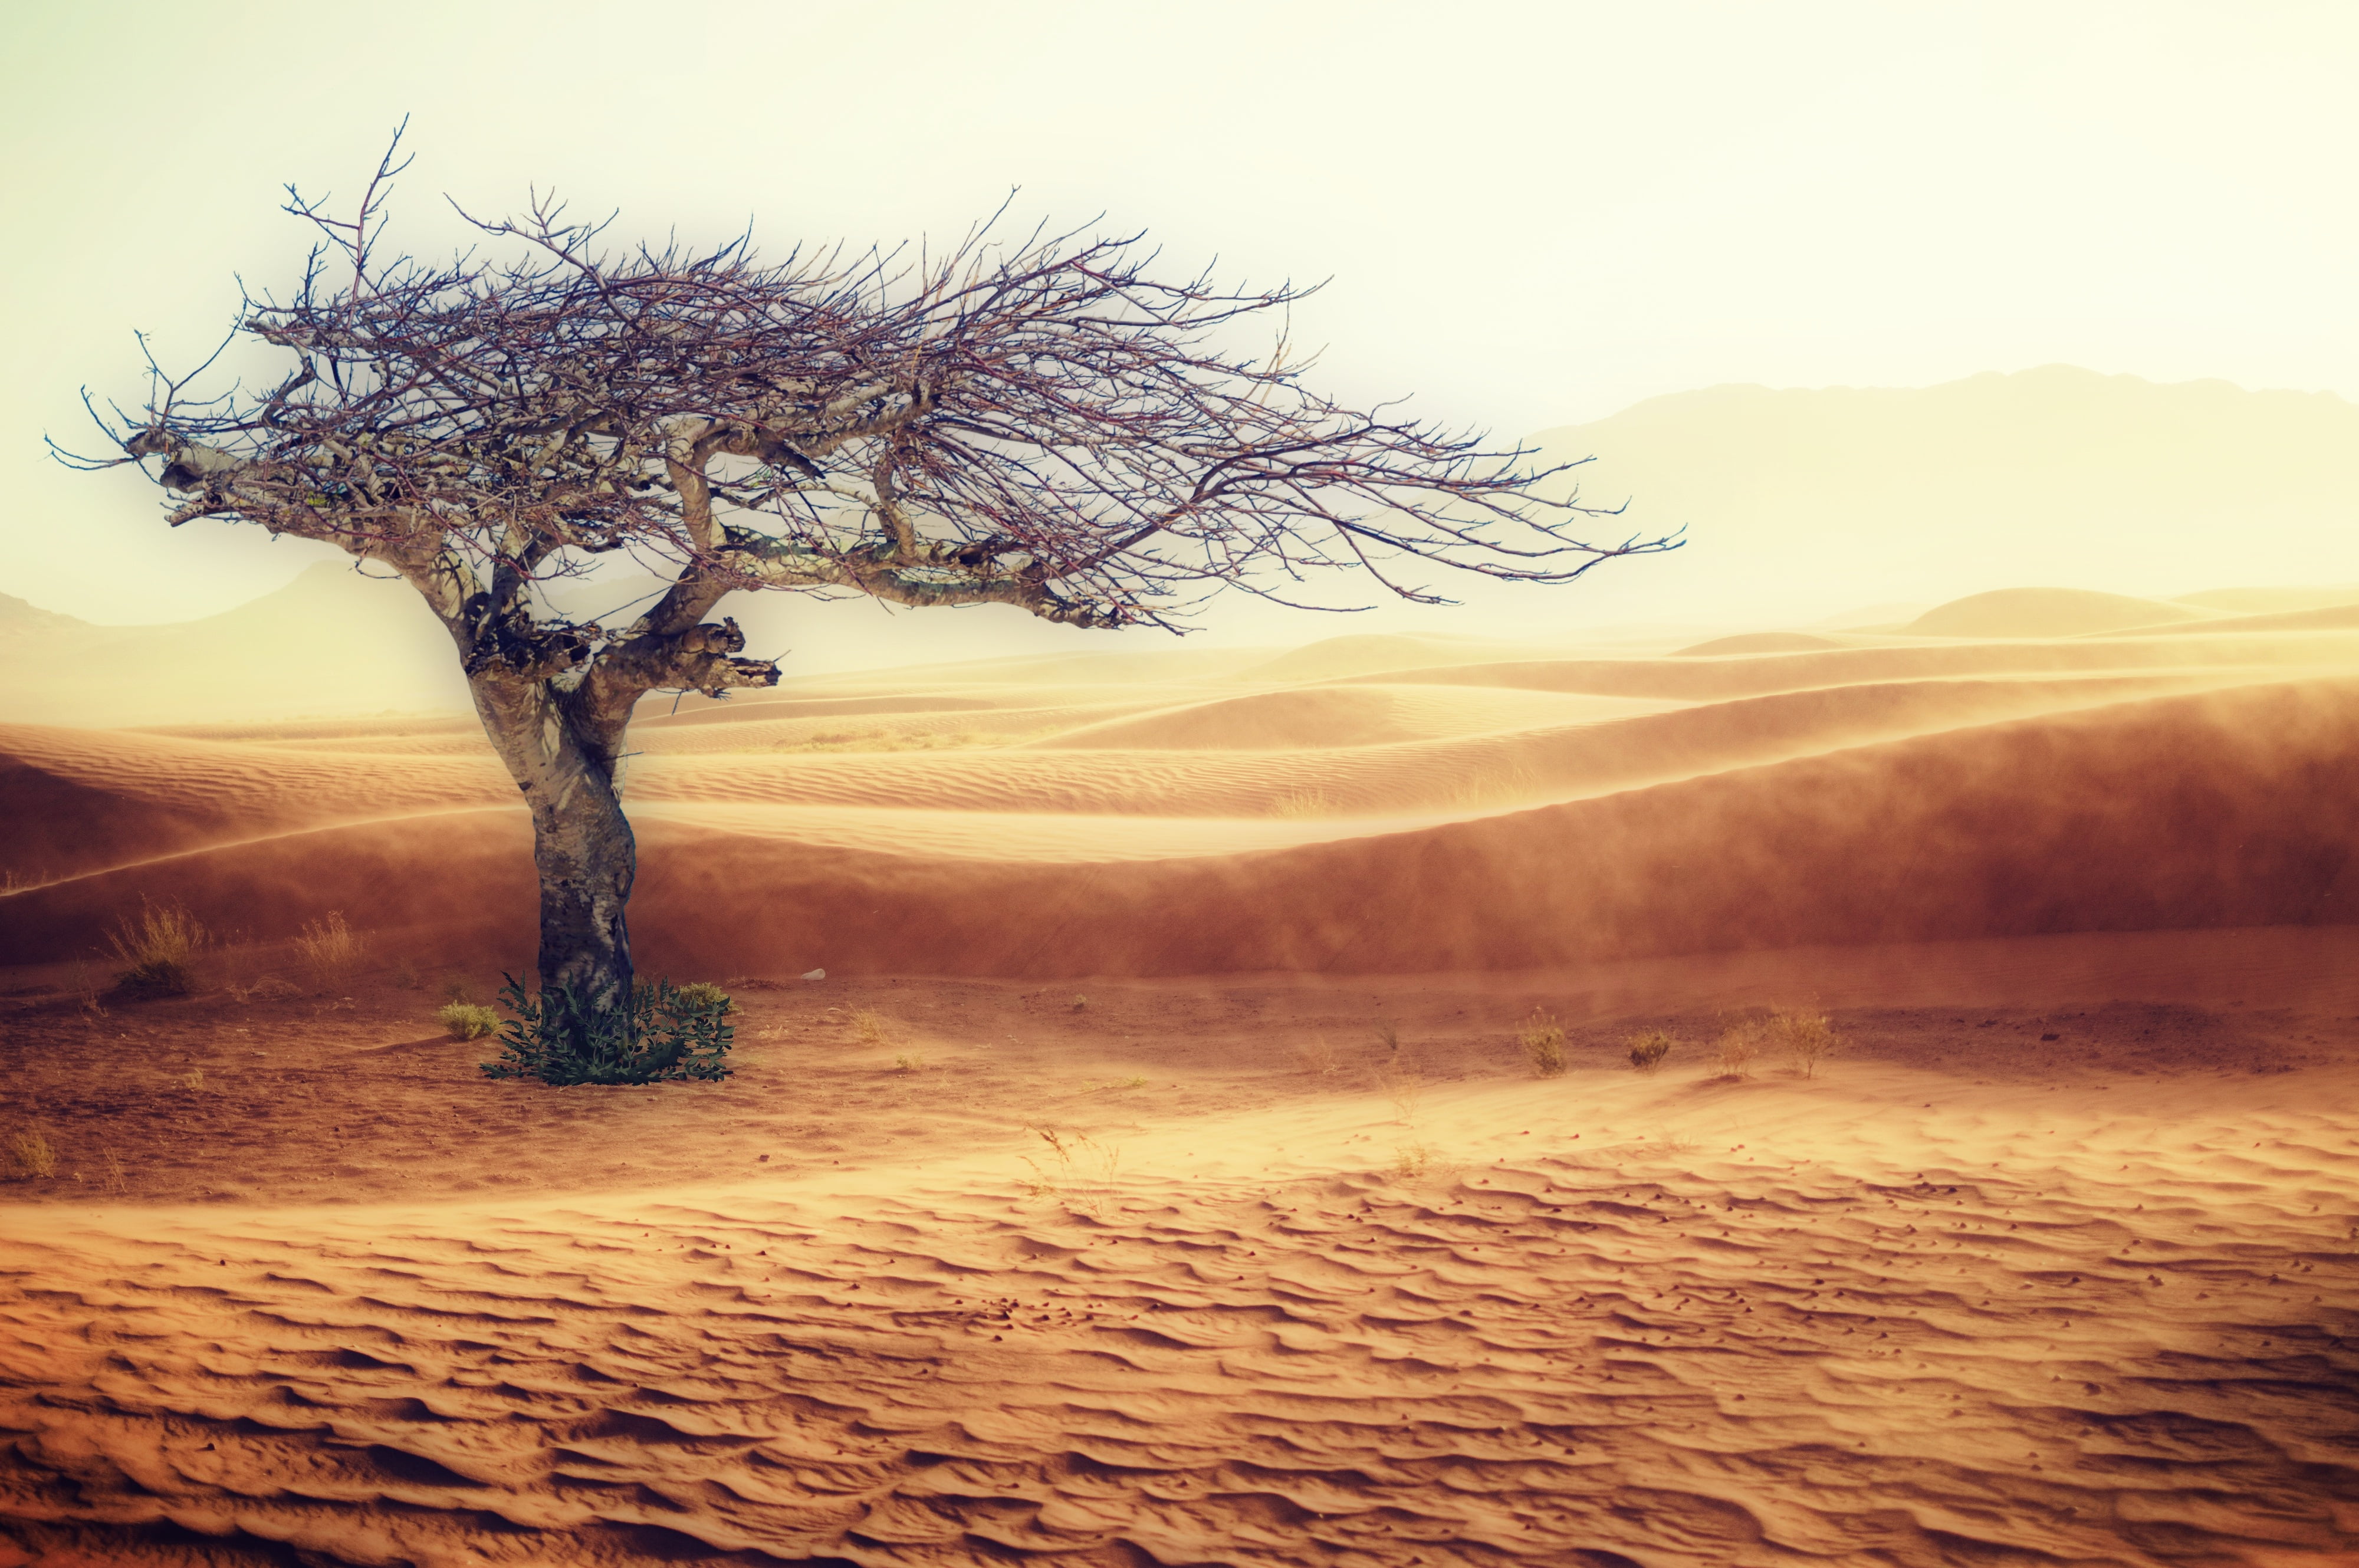 desert with tree